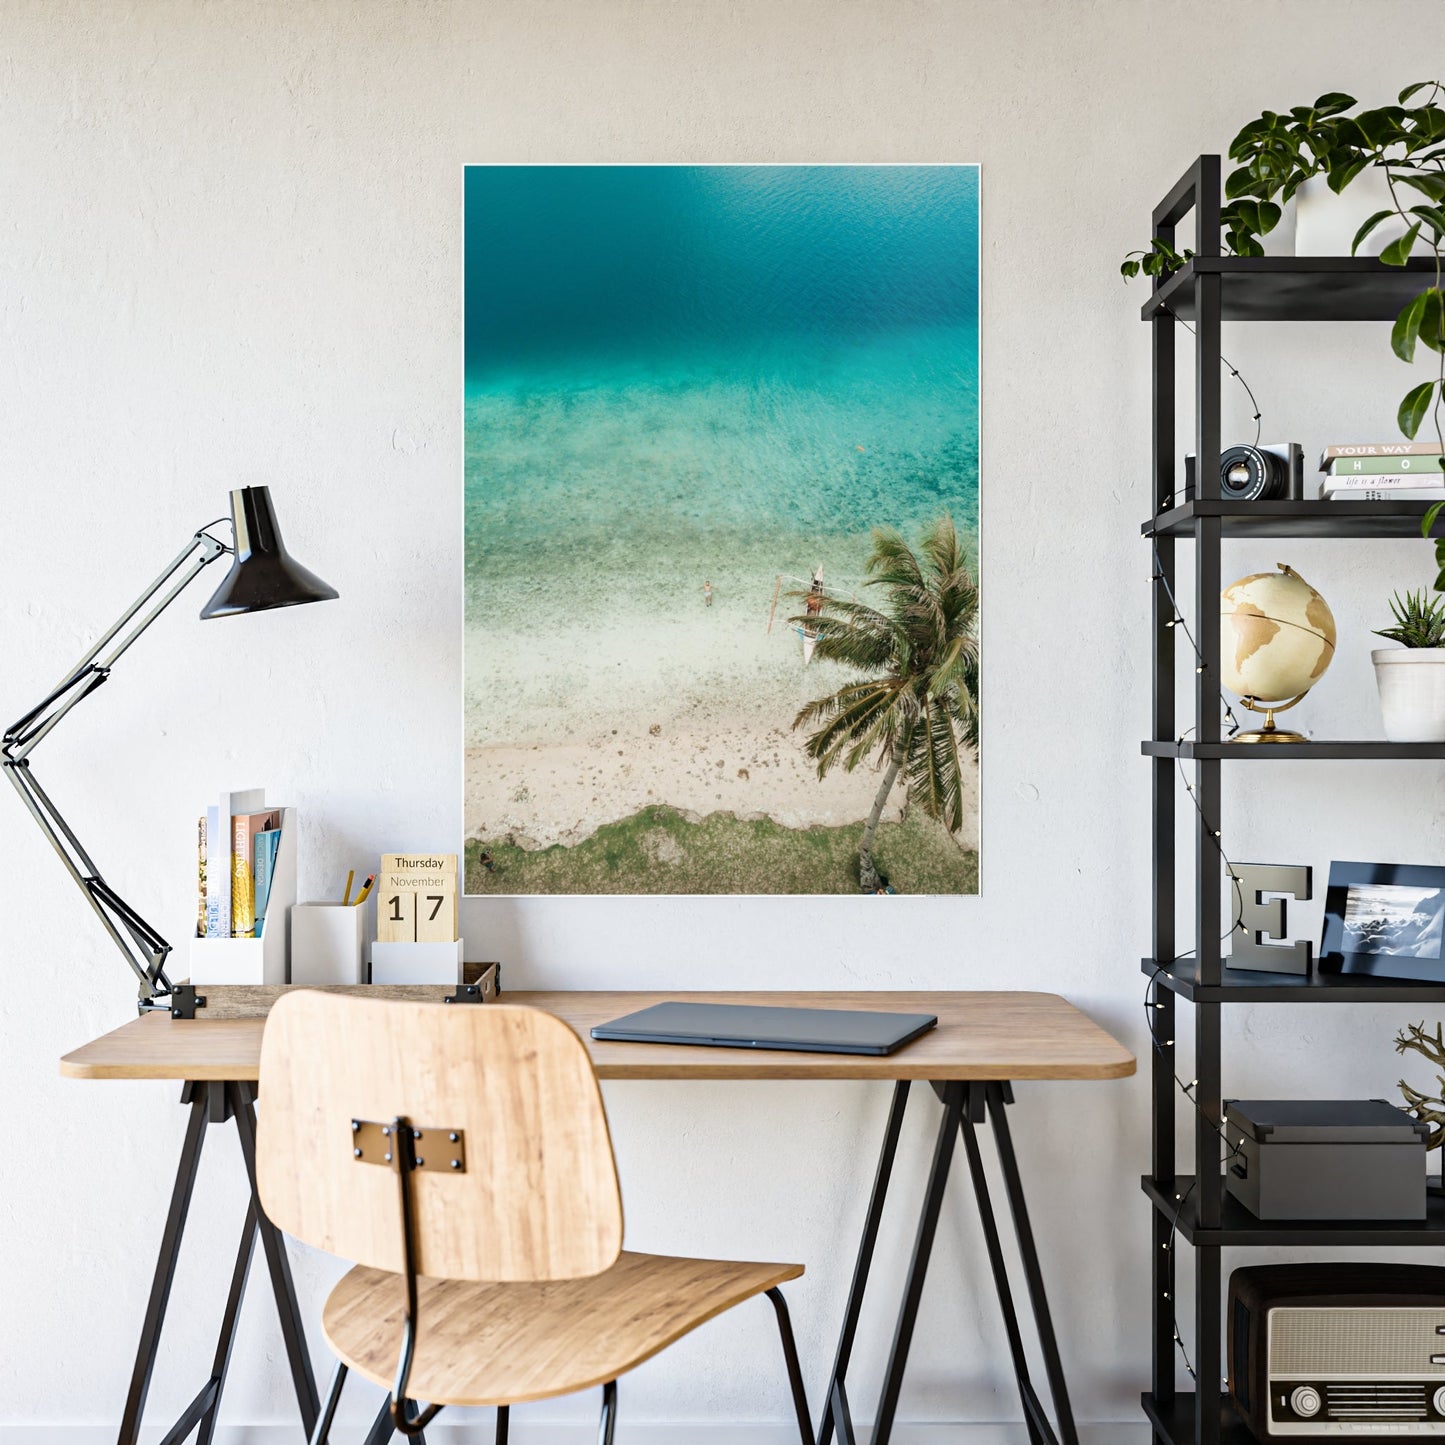 Ocean Paradise: Framed Poster of a Serene Island Beach Scene